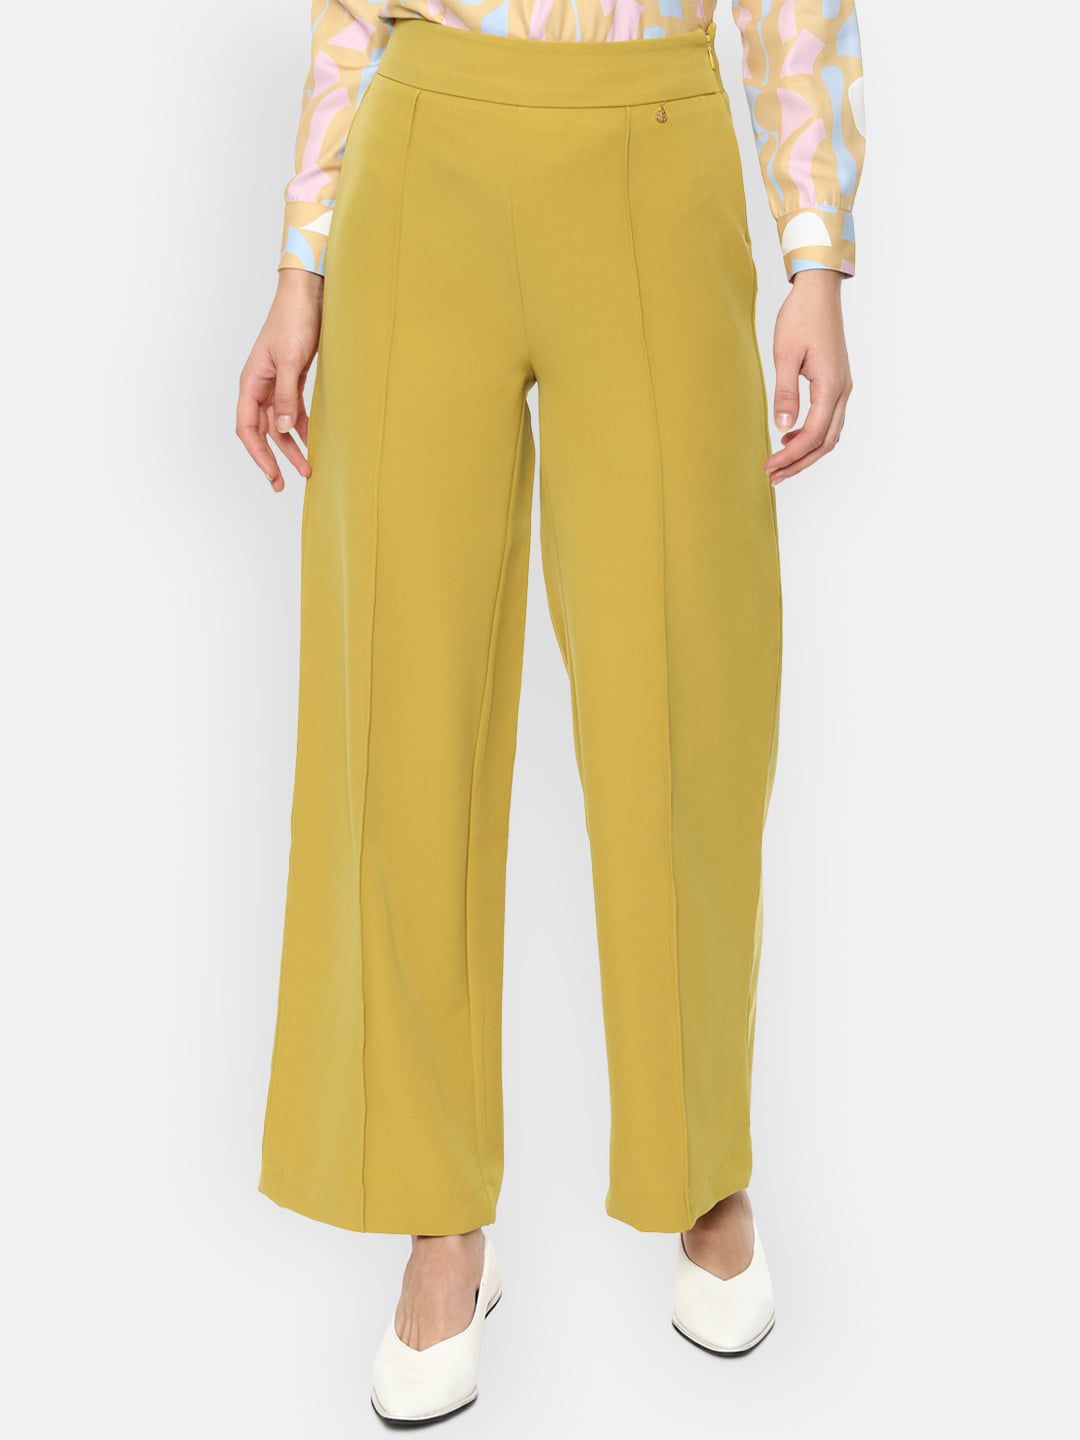 Van Heusen Woman Women Yellow Parallel Trousers Price in India